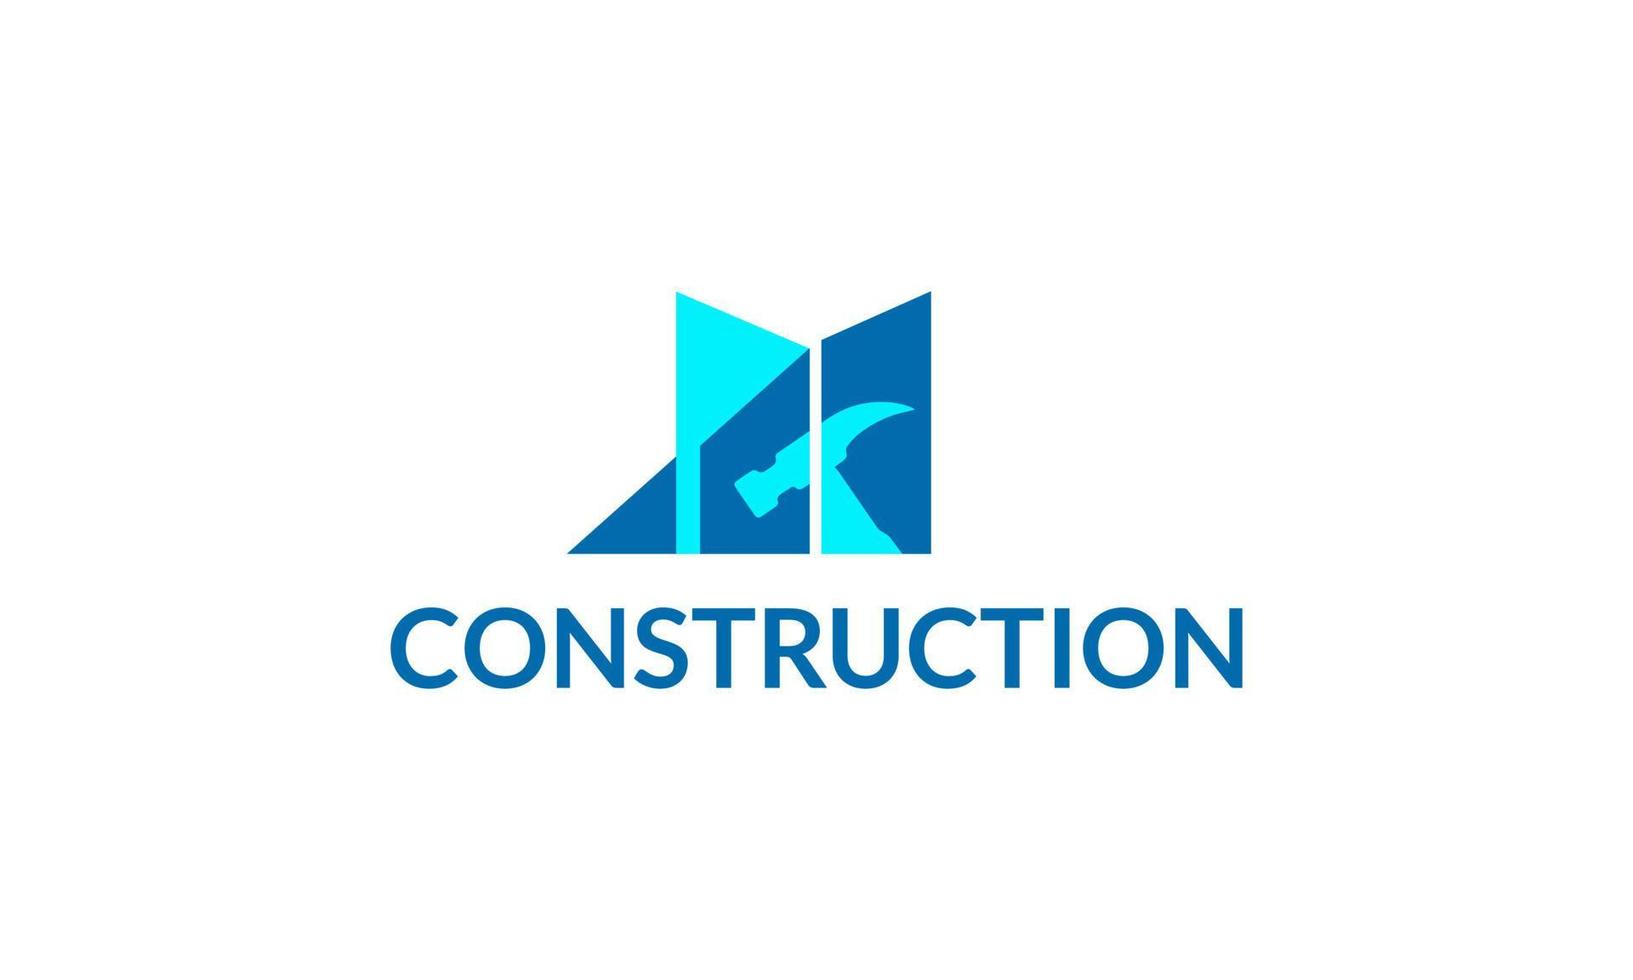 construction business logo design vector